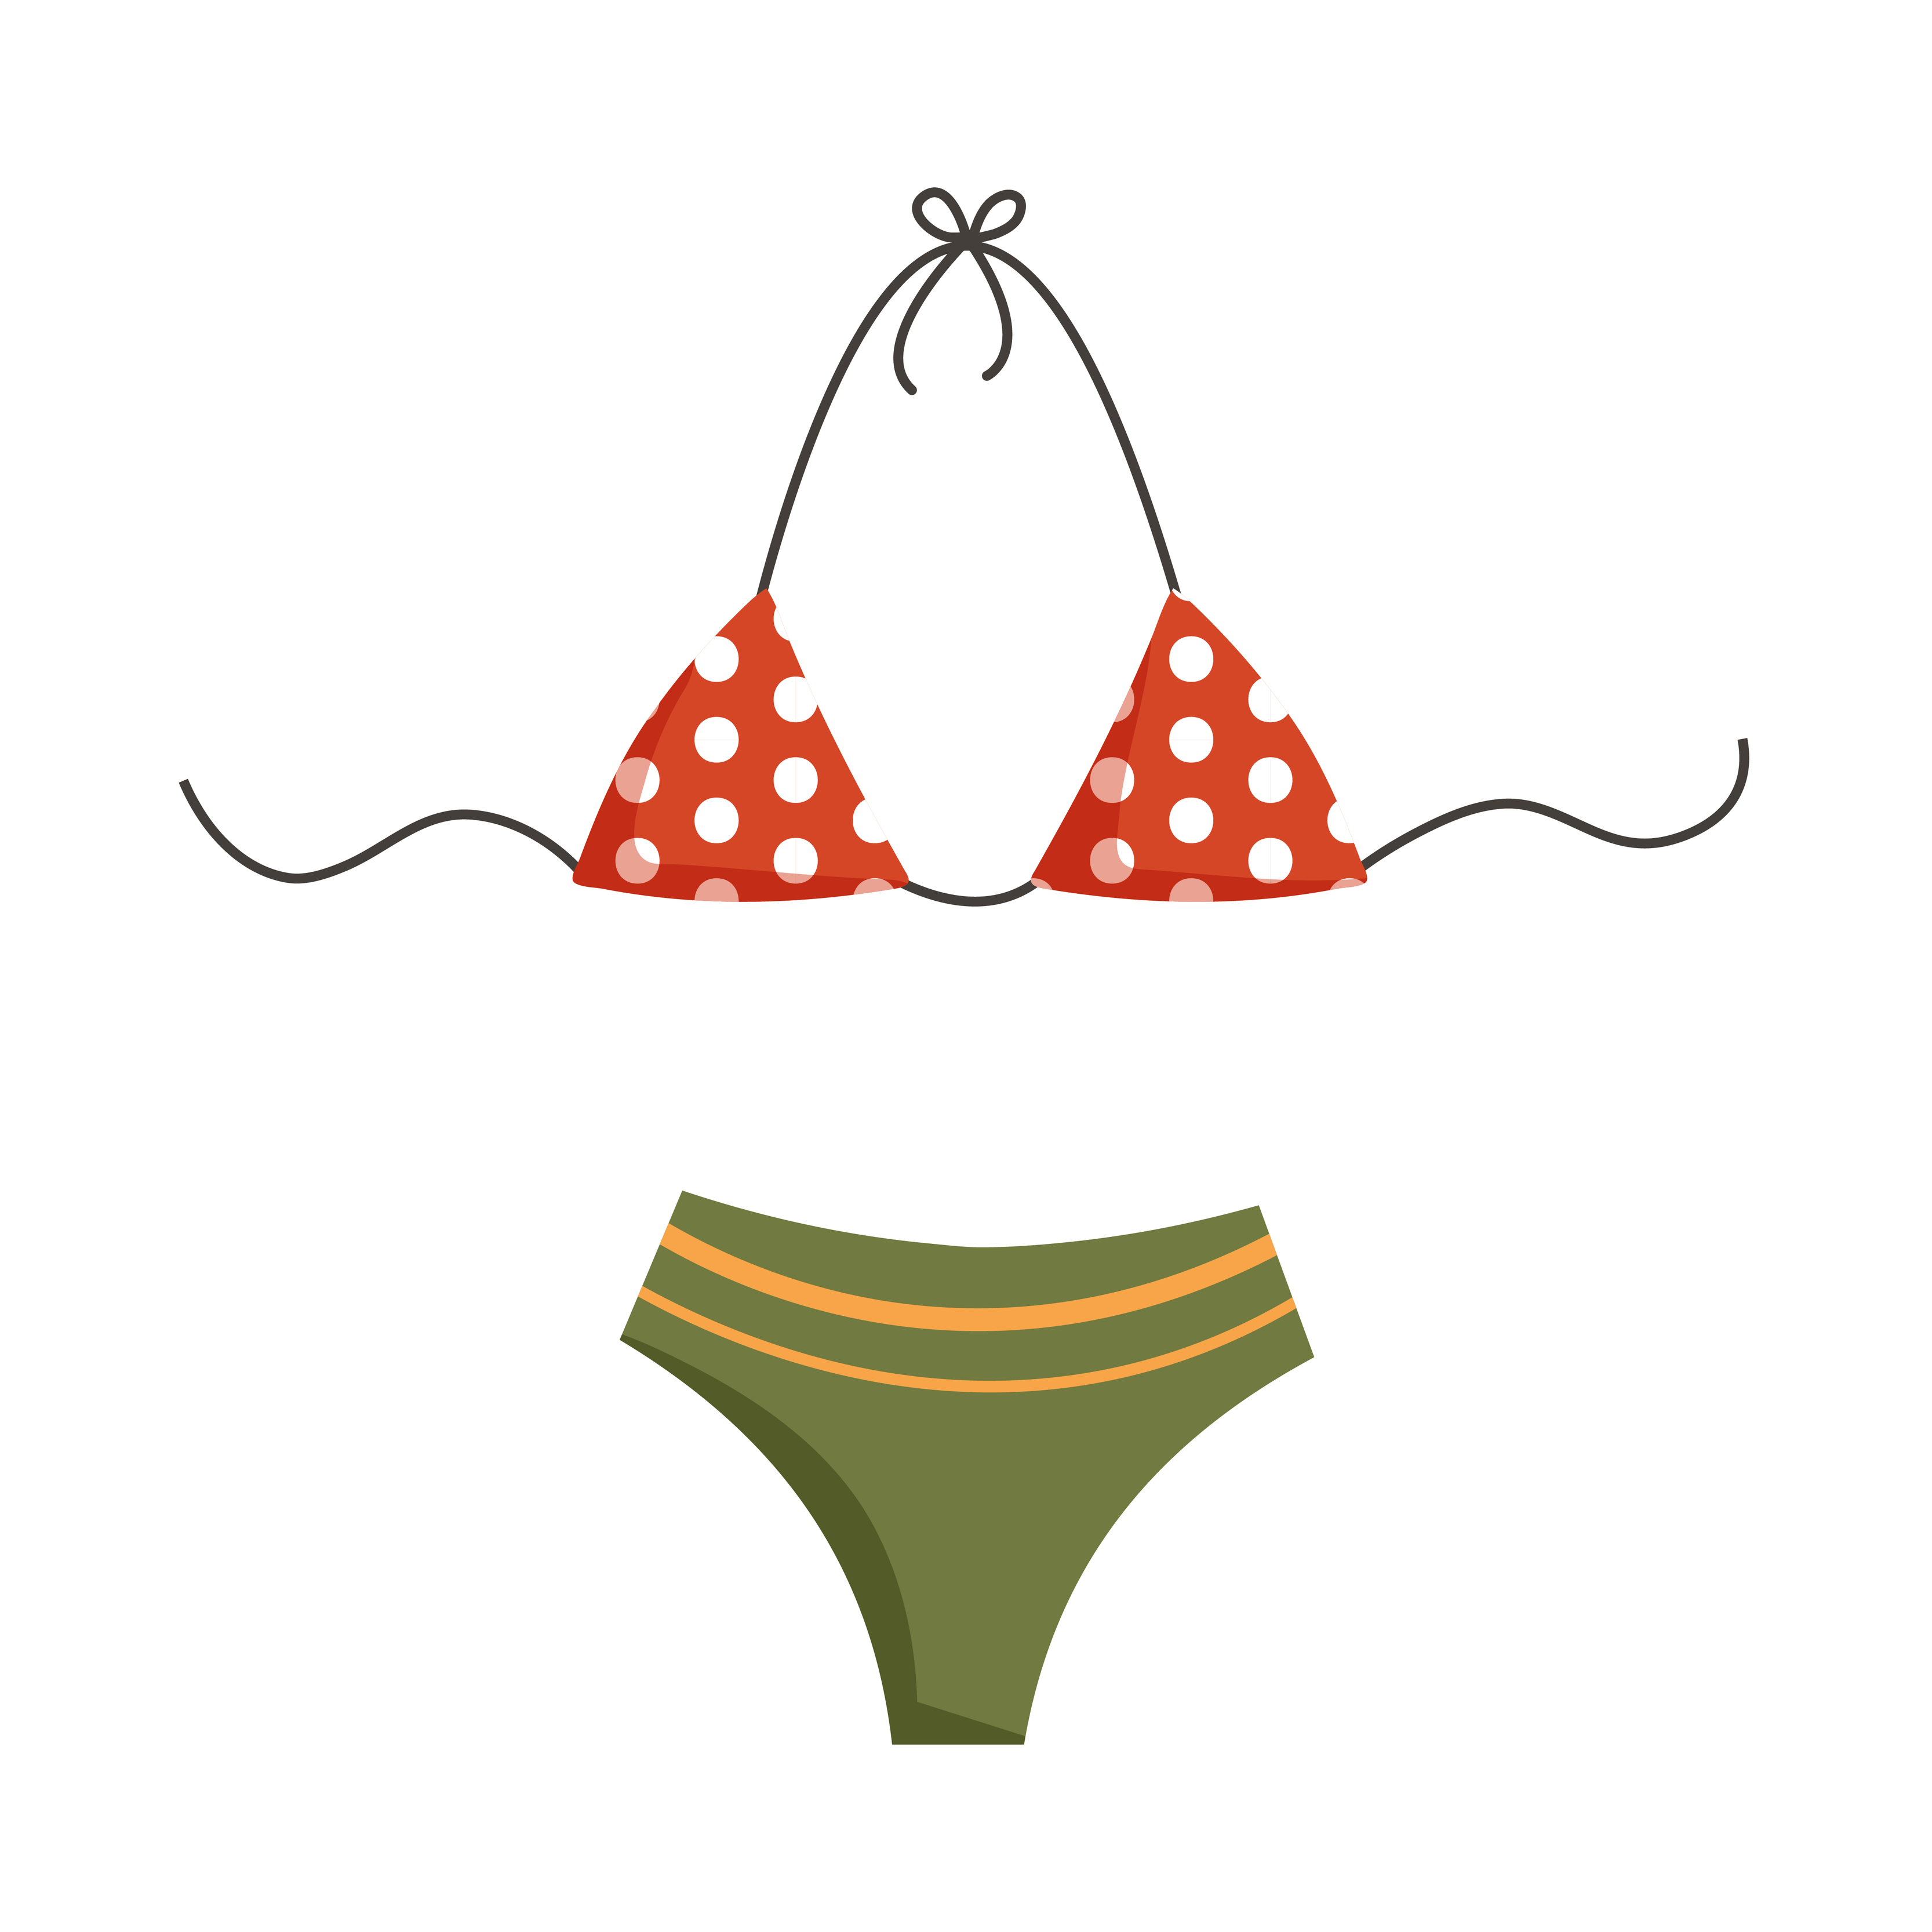 Broek hebzuchtig Broederschap Vector illustration of retro woman swimwear in peas. Bikini swimsuit summer  clothes in cartoon flat style 5390654 Vector Art at Vecteezy